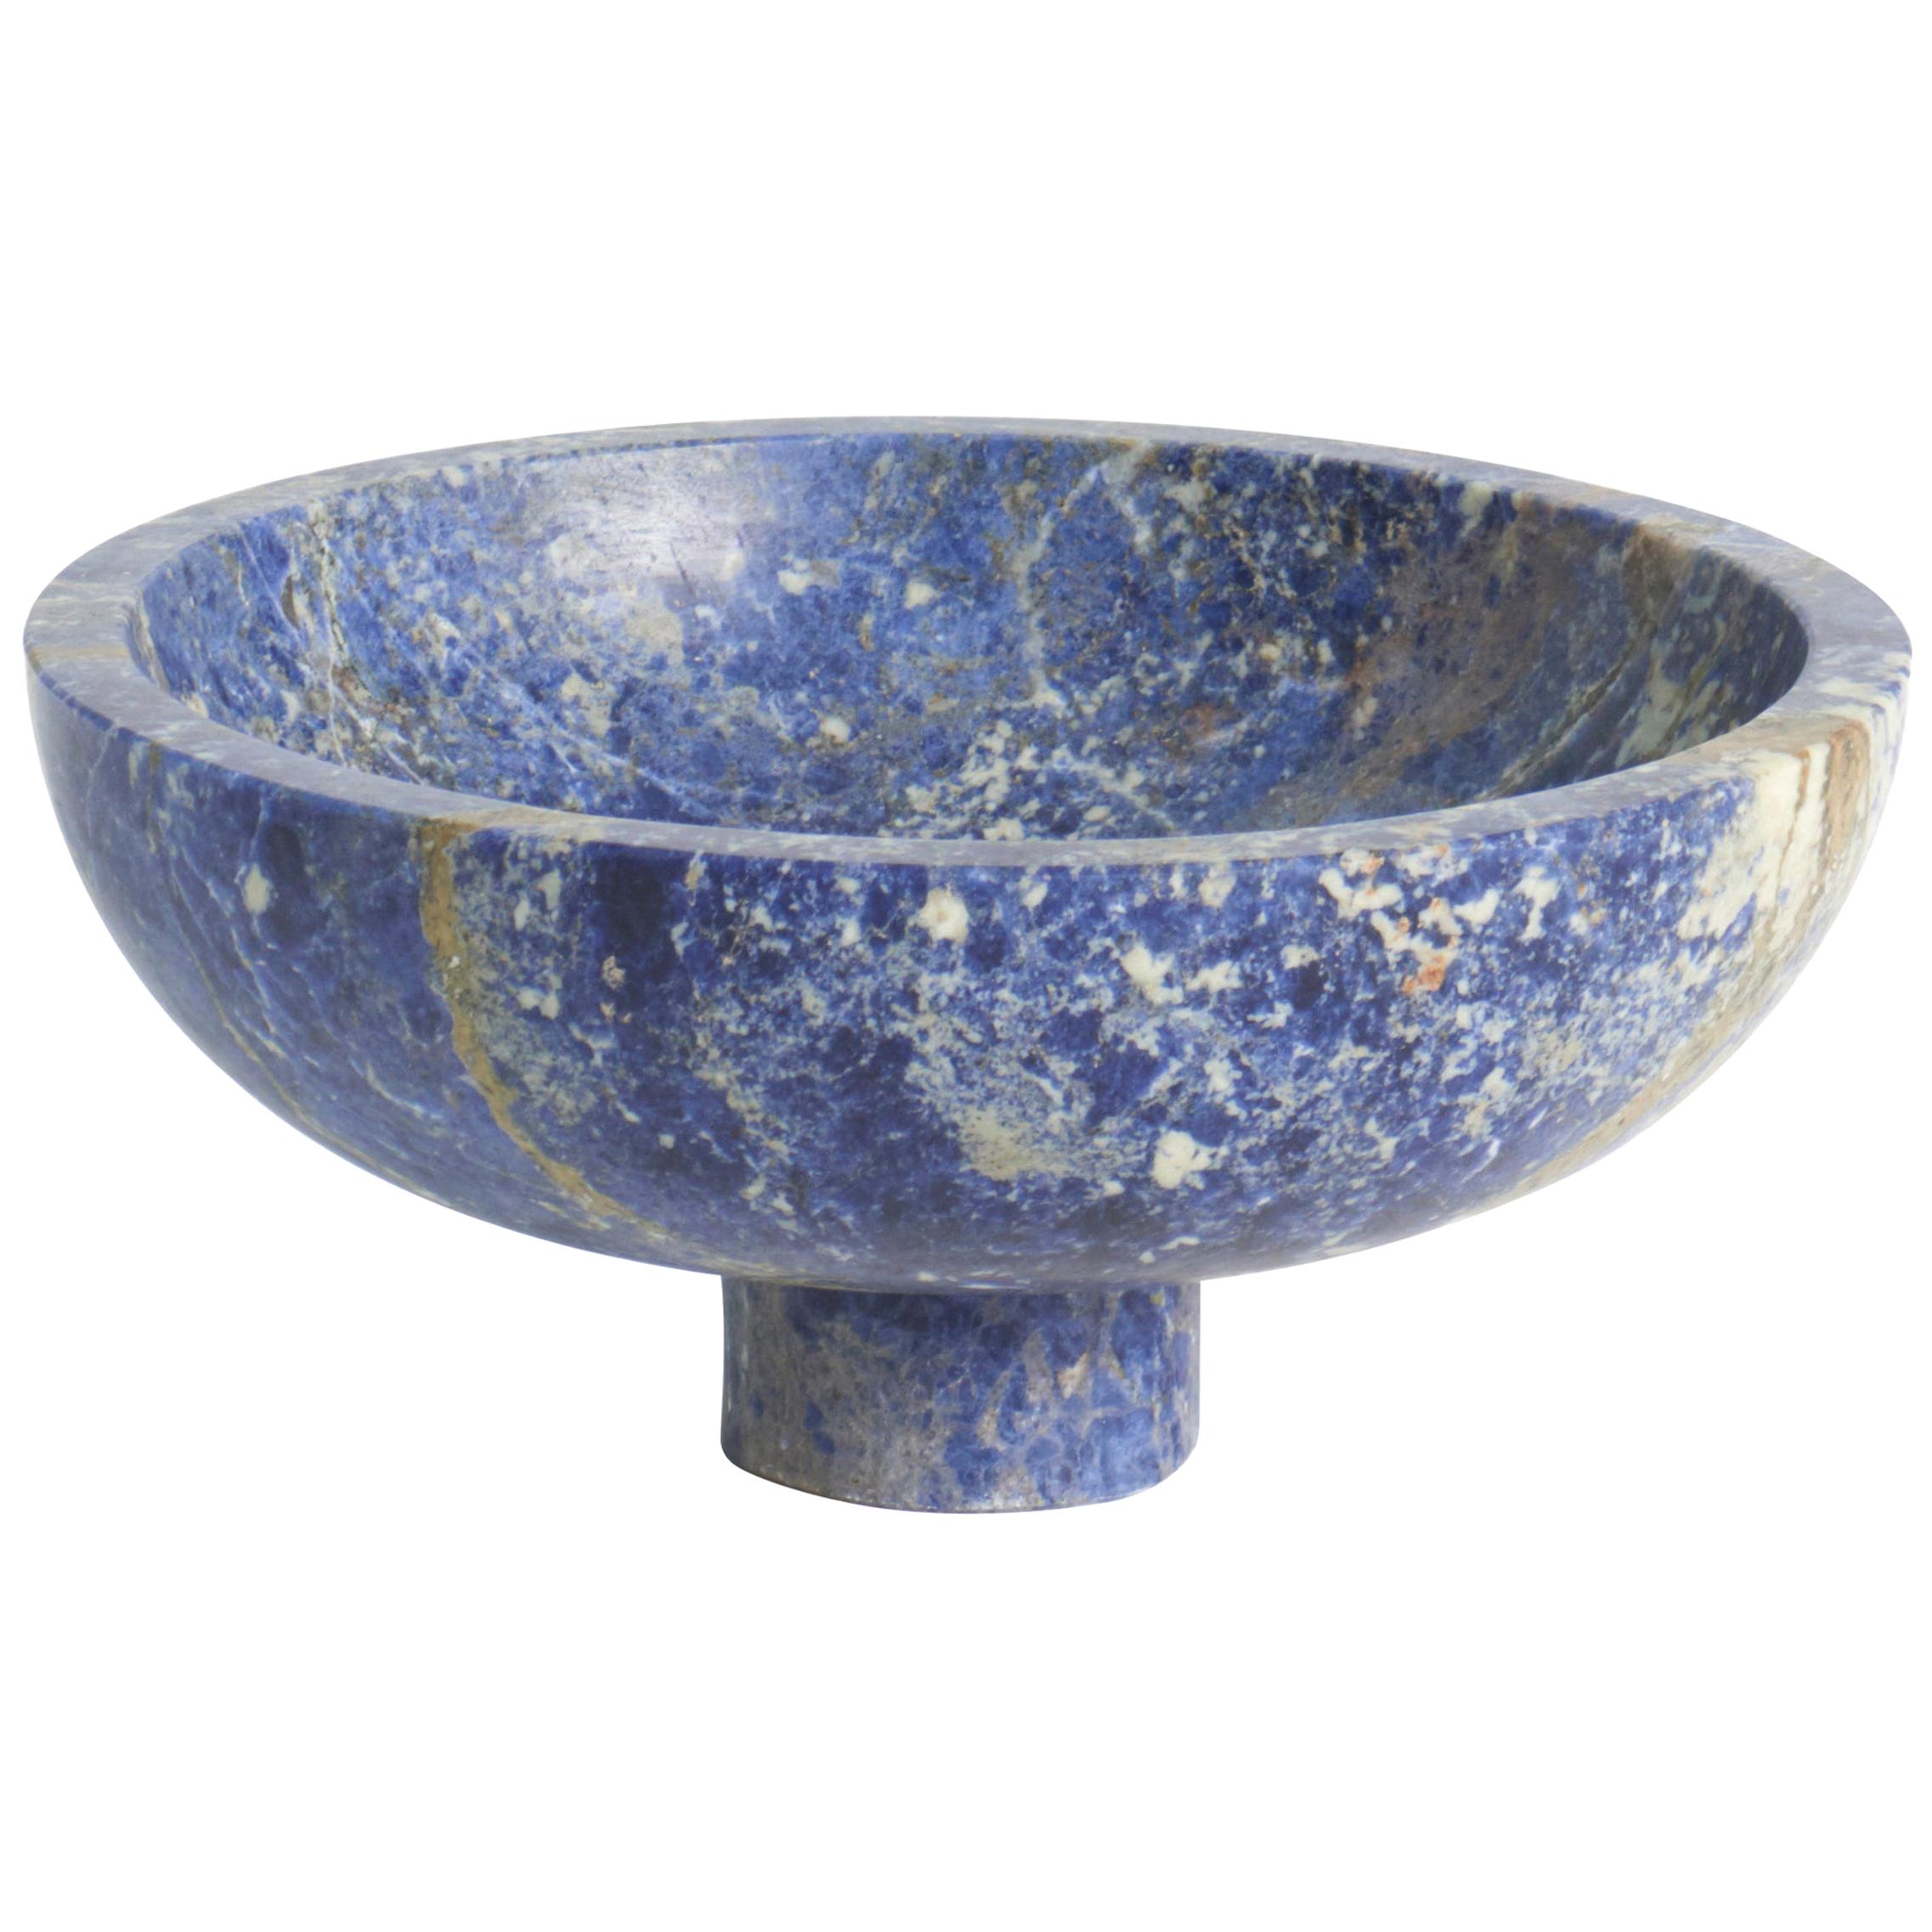 New modern Fruit Bowl in Blue Marble, creator Karen Chekerdjian Stock For Sale